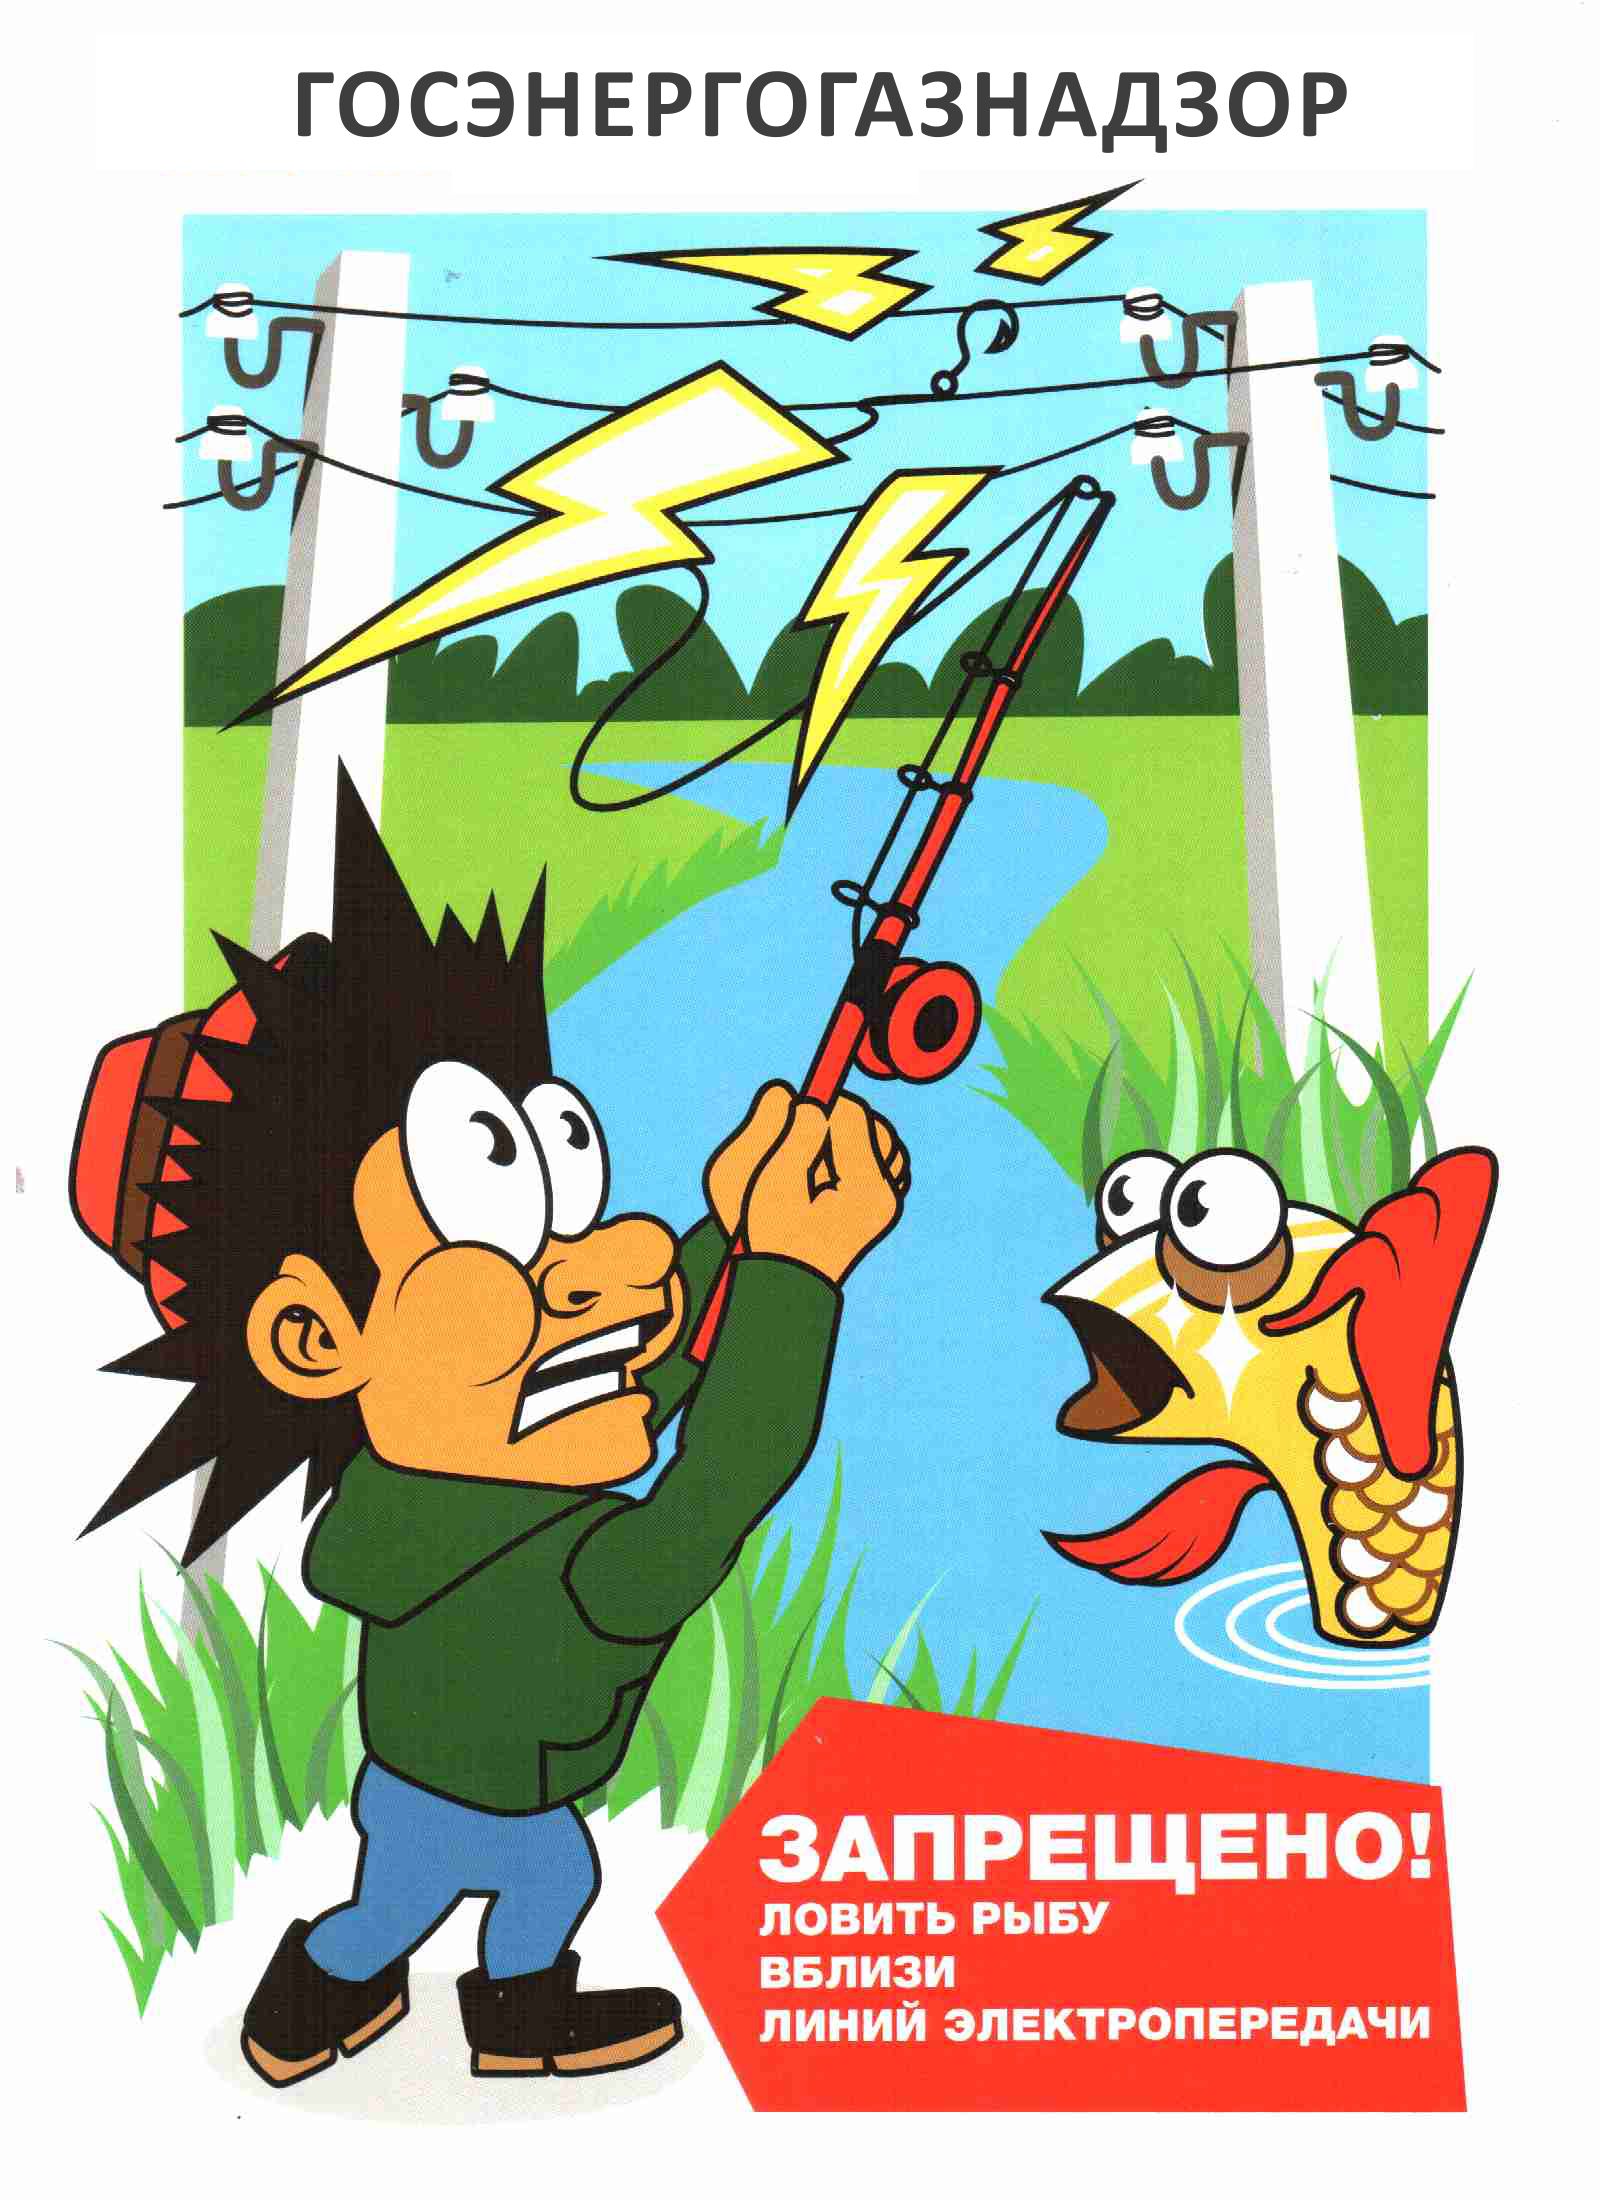 Плакат под ЛЭП рыбу ловить запрещено